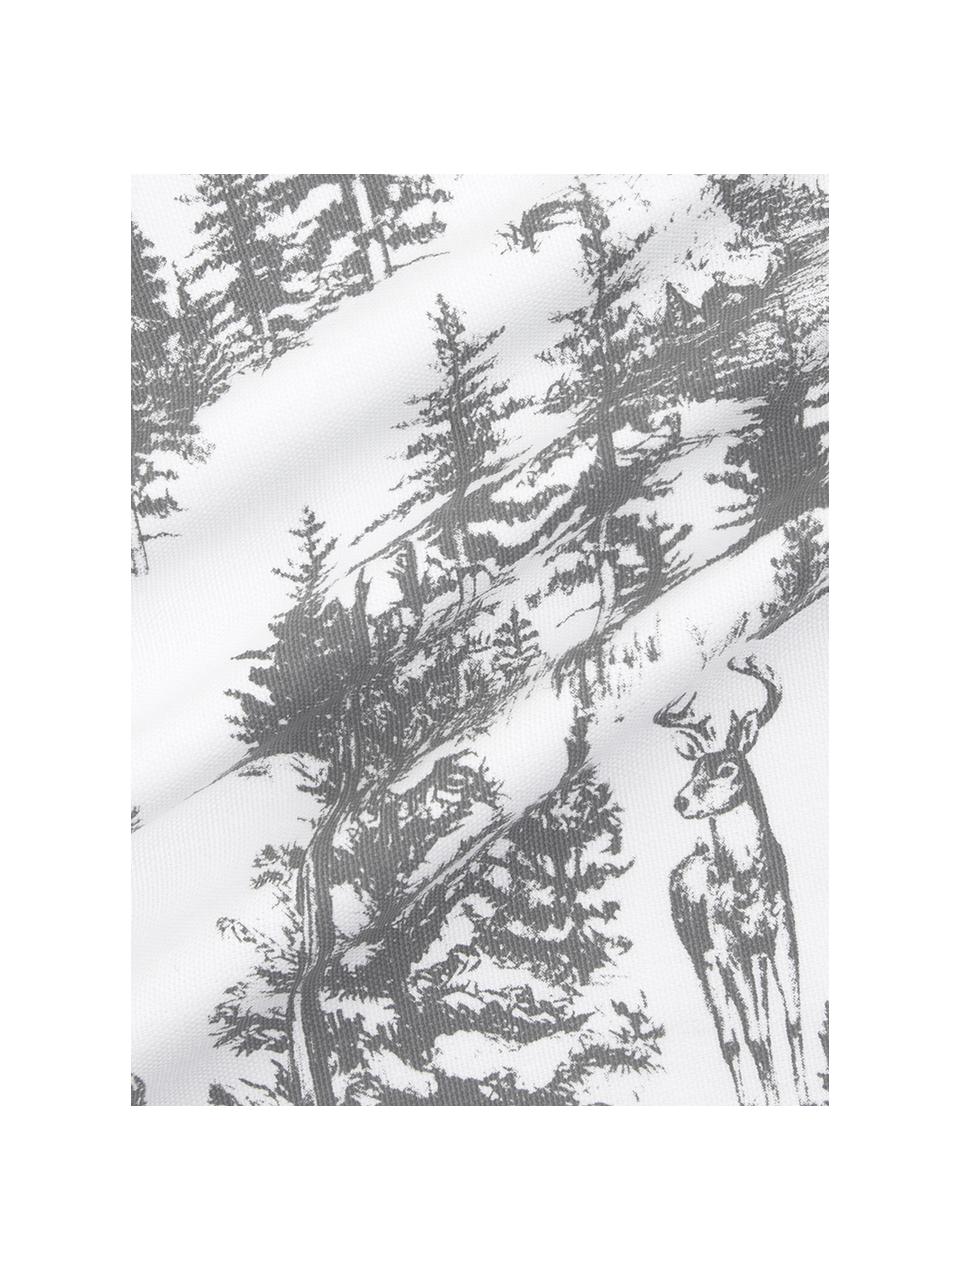 Kissenhülle Nordic mit winterlichem Motiv in Grau/Weiß, Baumwolle, Dunkelgrau, Weiß, 40 x 40 cm